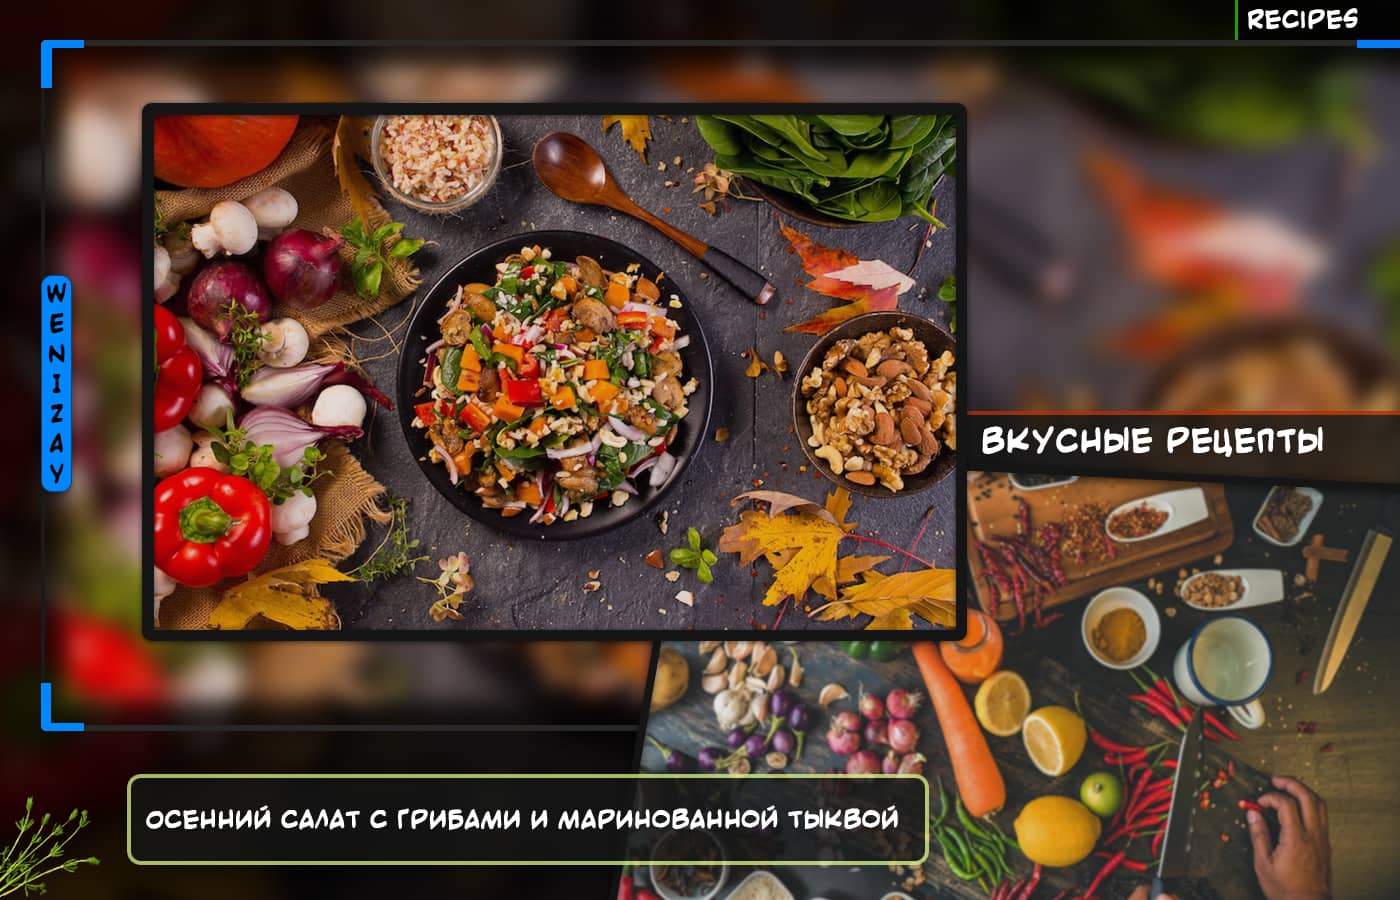 Рецепт • Осенний салат с грибами и маринованной тыквой, Салаты (рецепты)